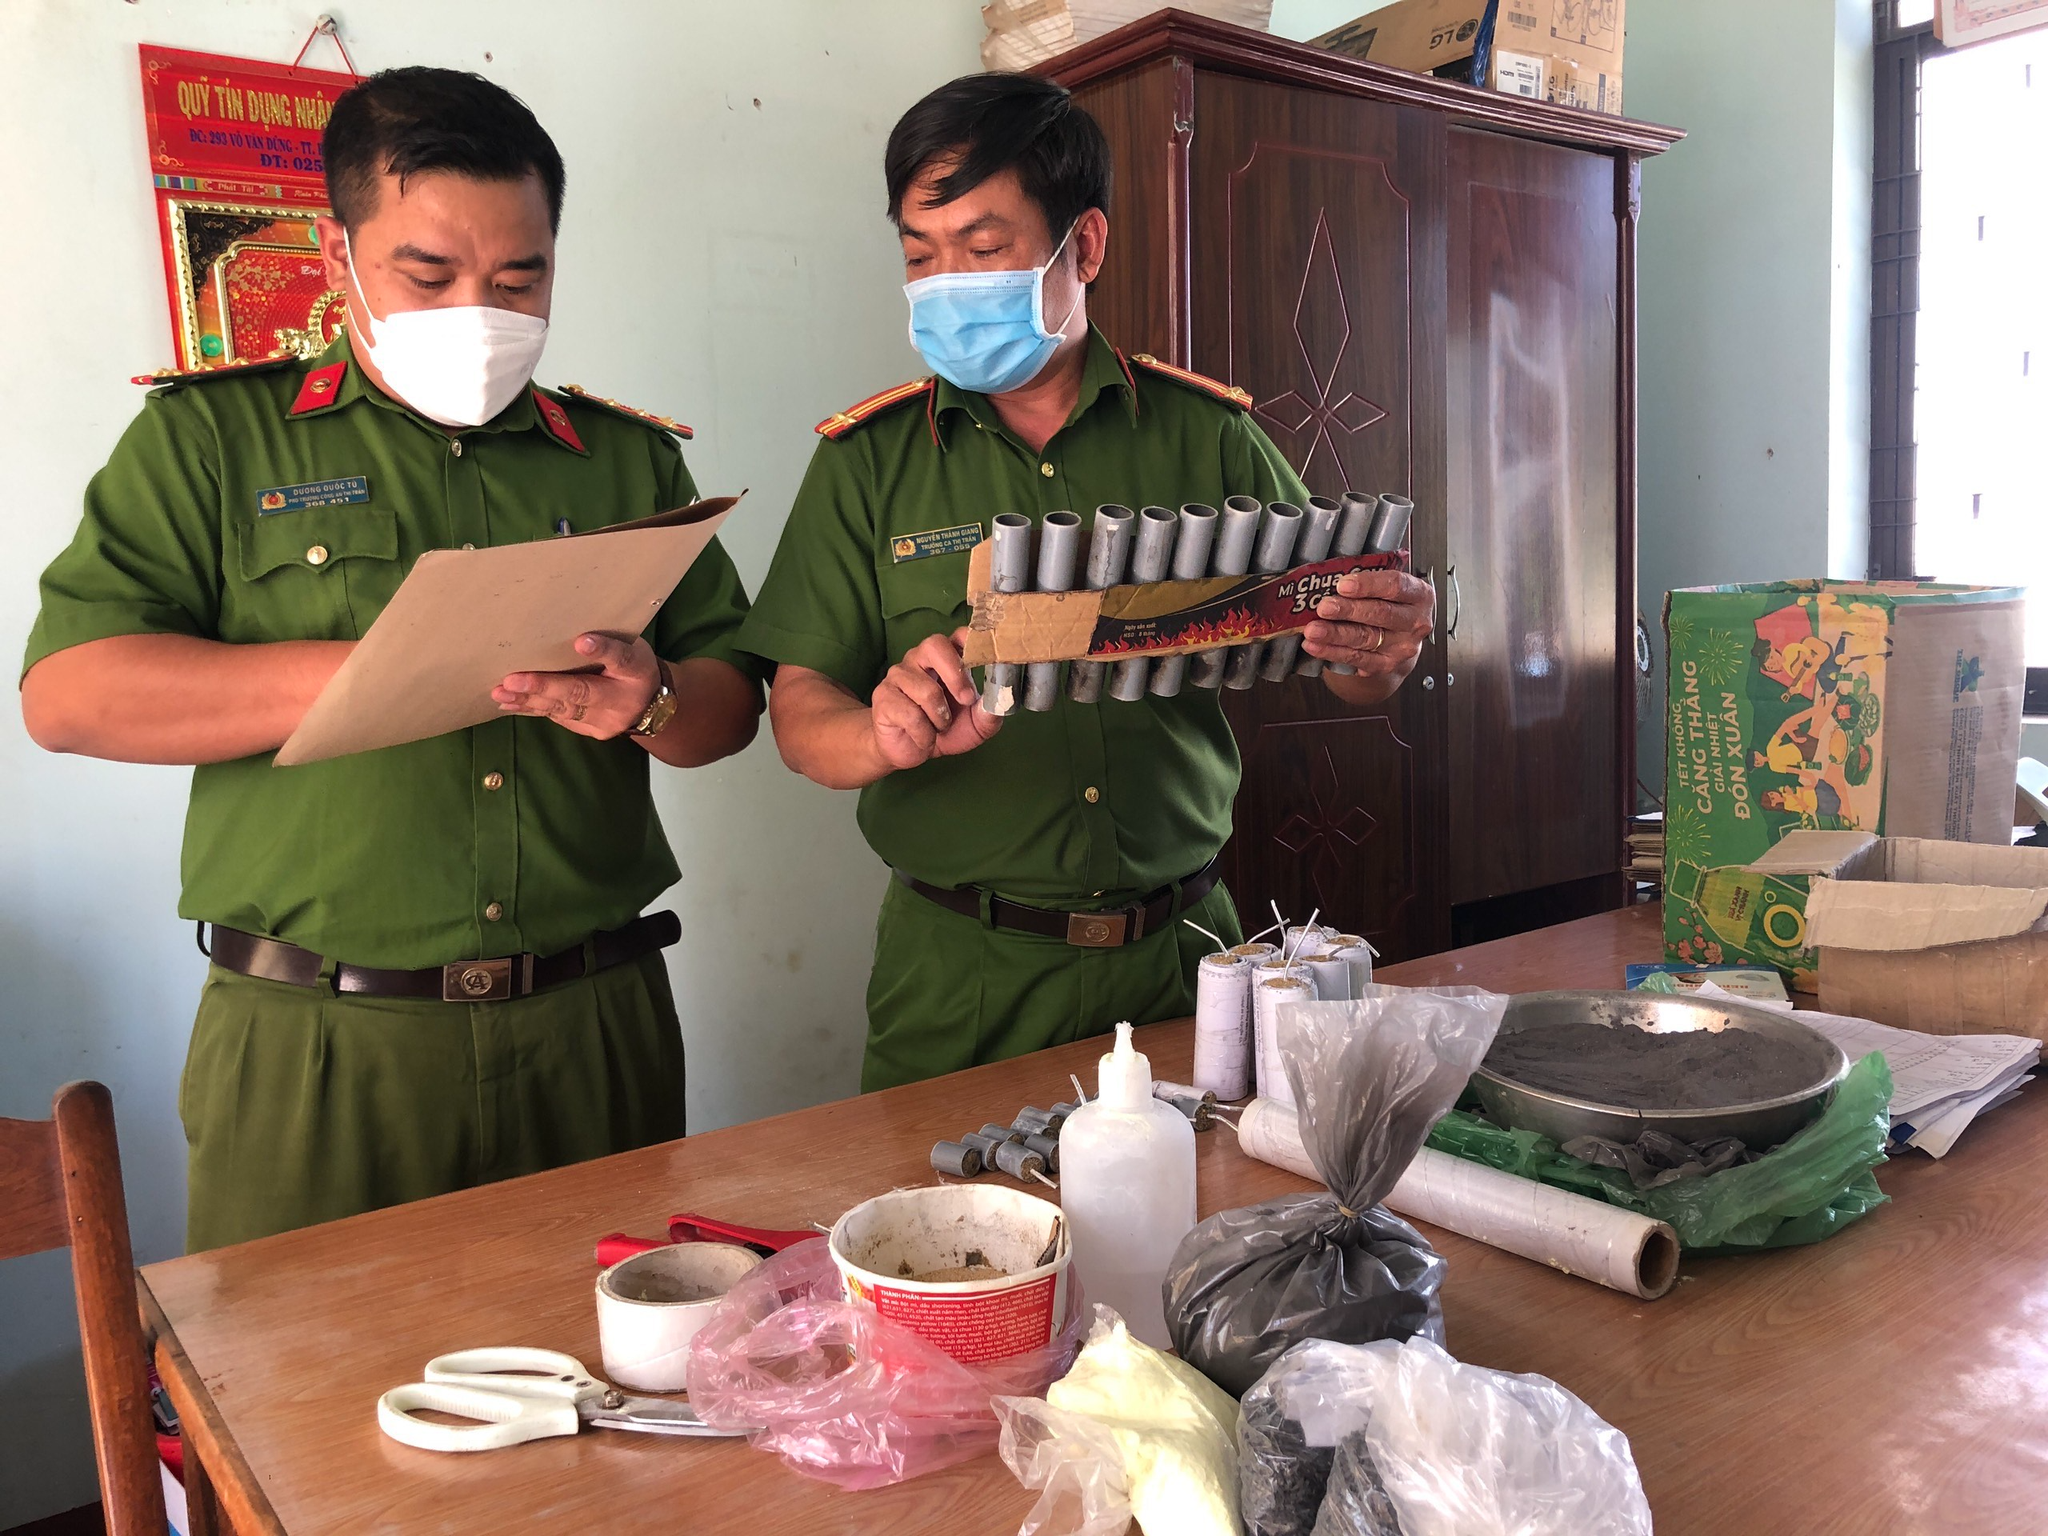 Bình Định: Một học sinh tự chế tạo pháo  - ảnh 1